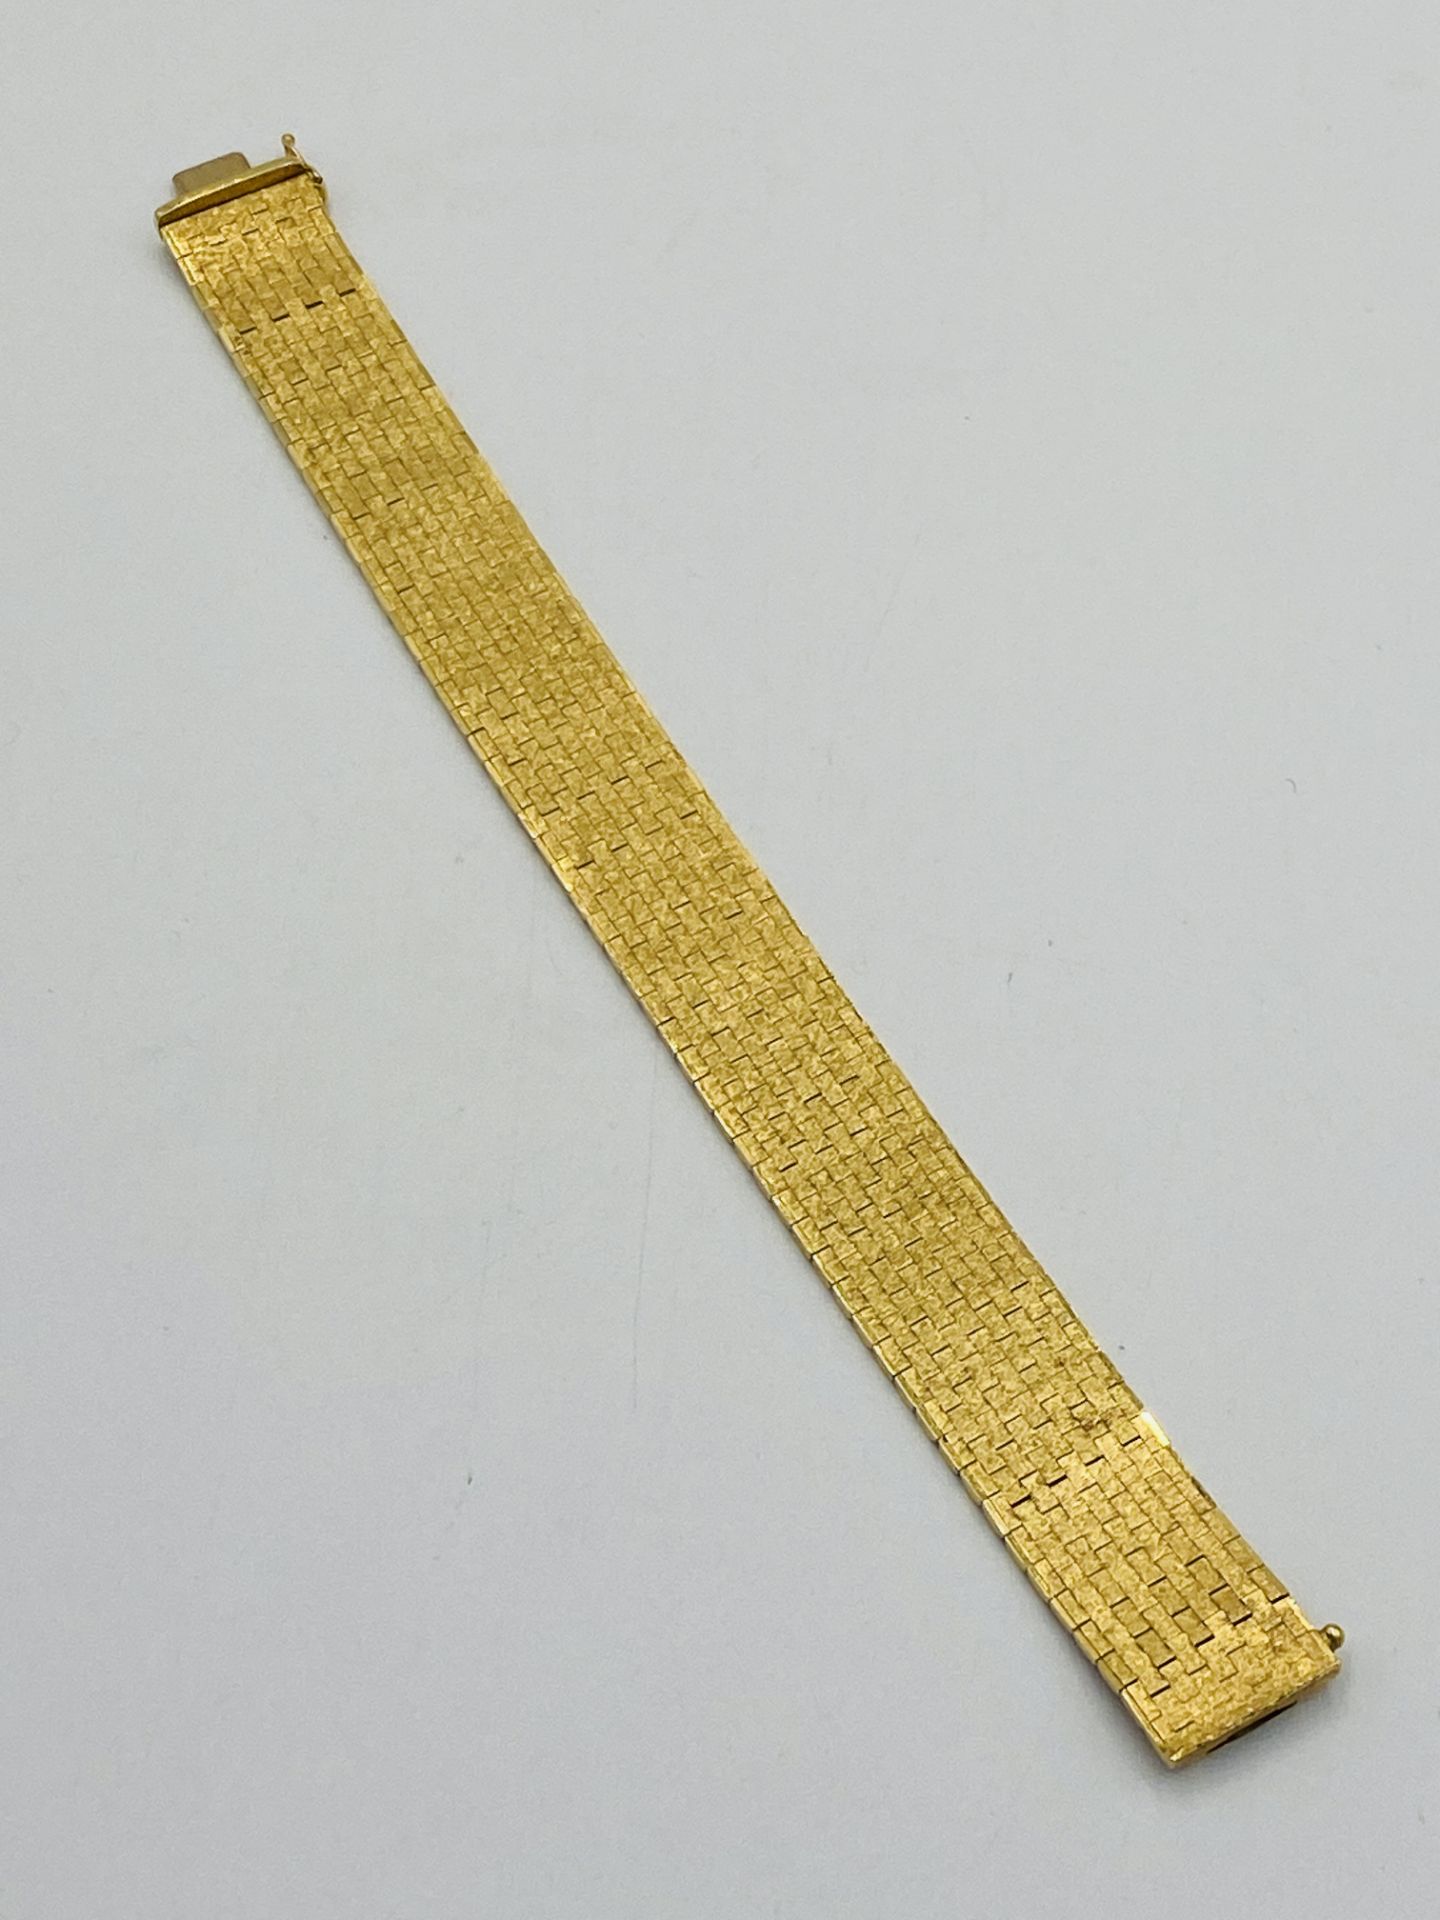 18ct gold bracelet - Image 3 of 6